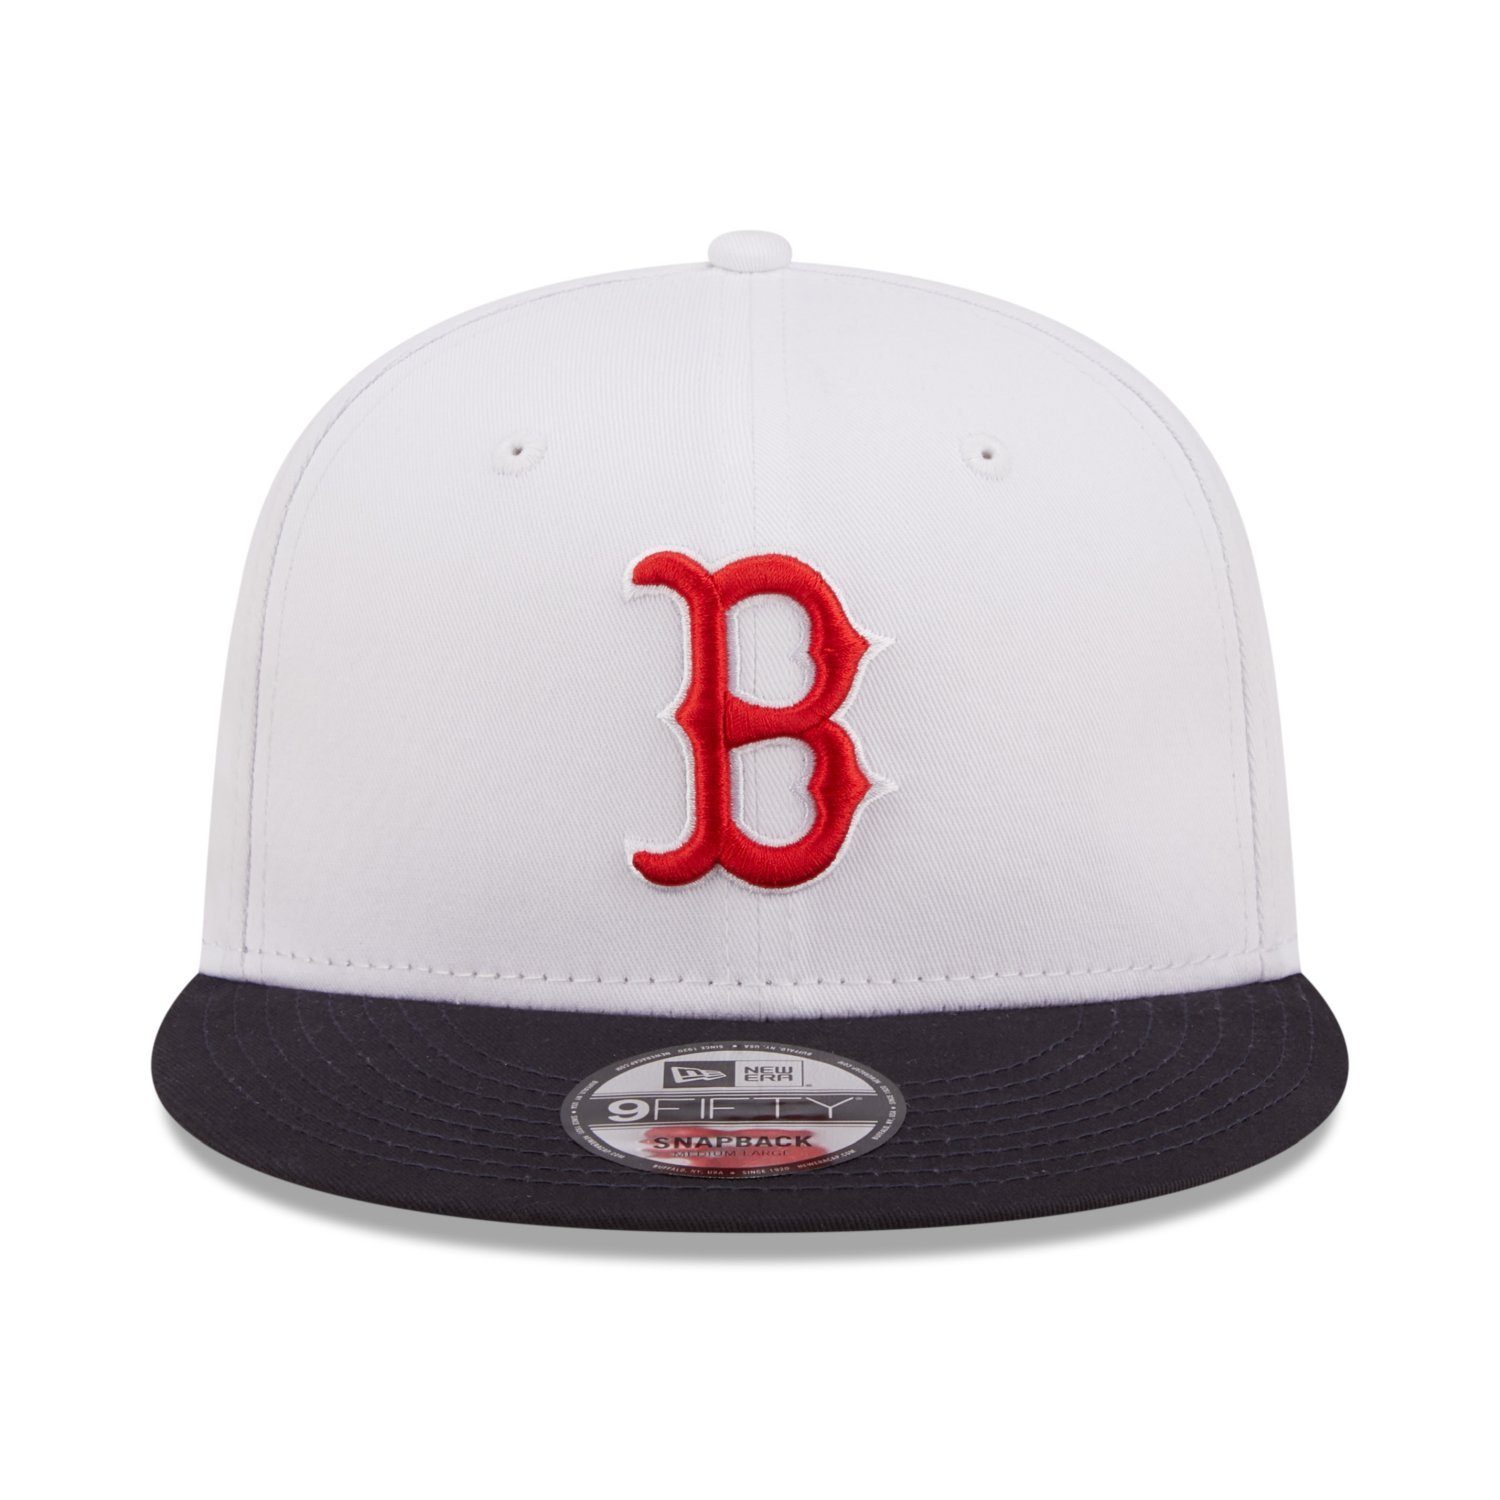 New Era Snapback Cap Boston 9Fifty Sox Red